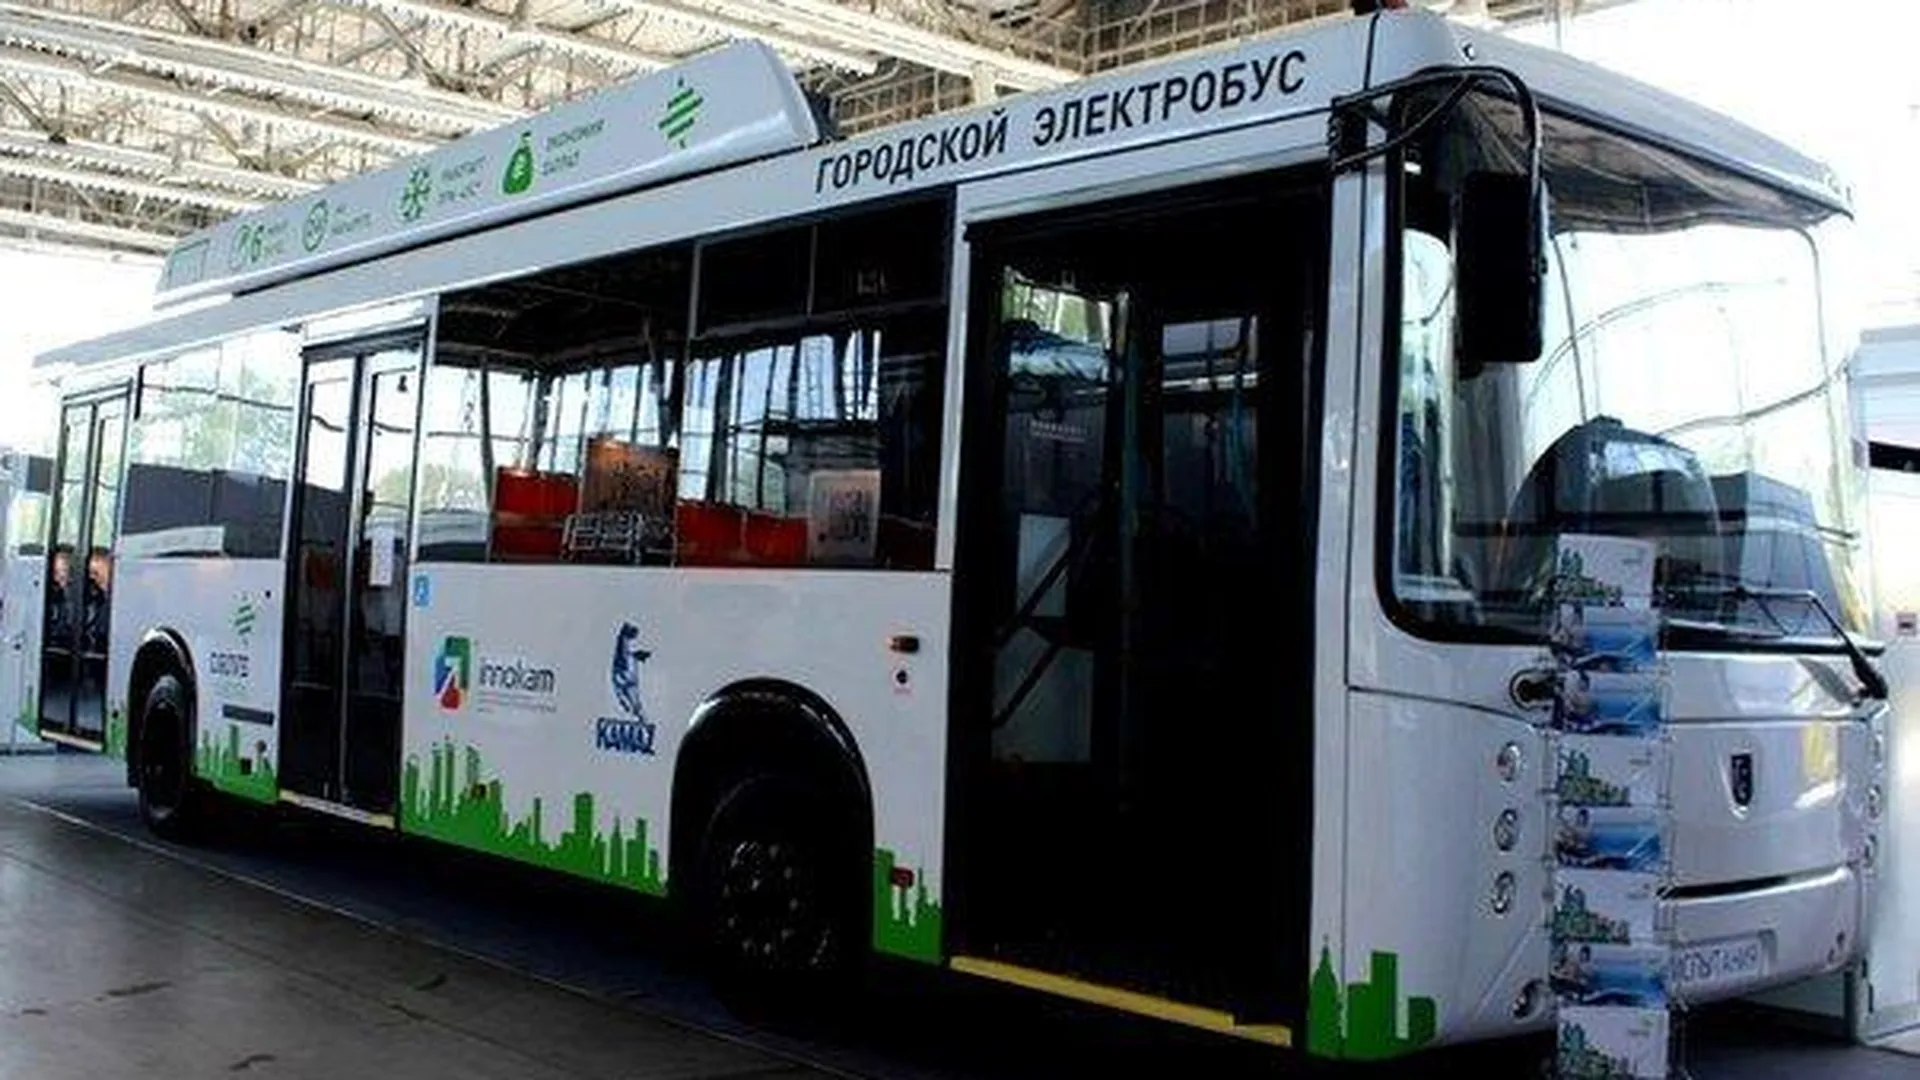 Электробус, запущенный в инноцентре «Сколково», сможет окупить себя за 7 лет